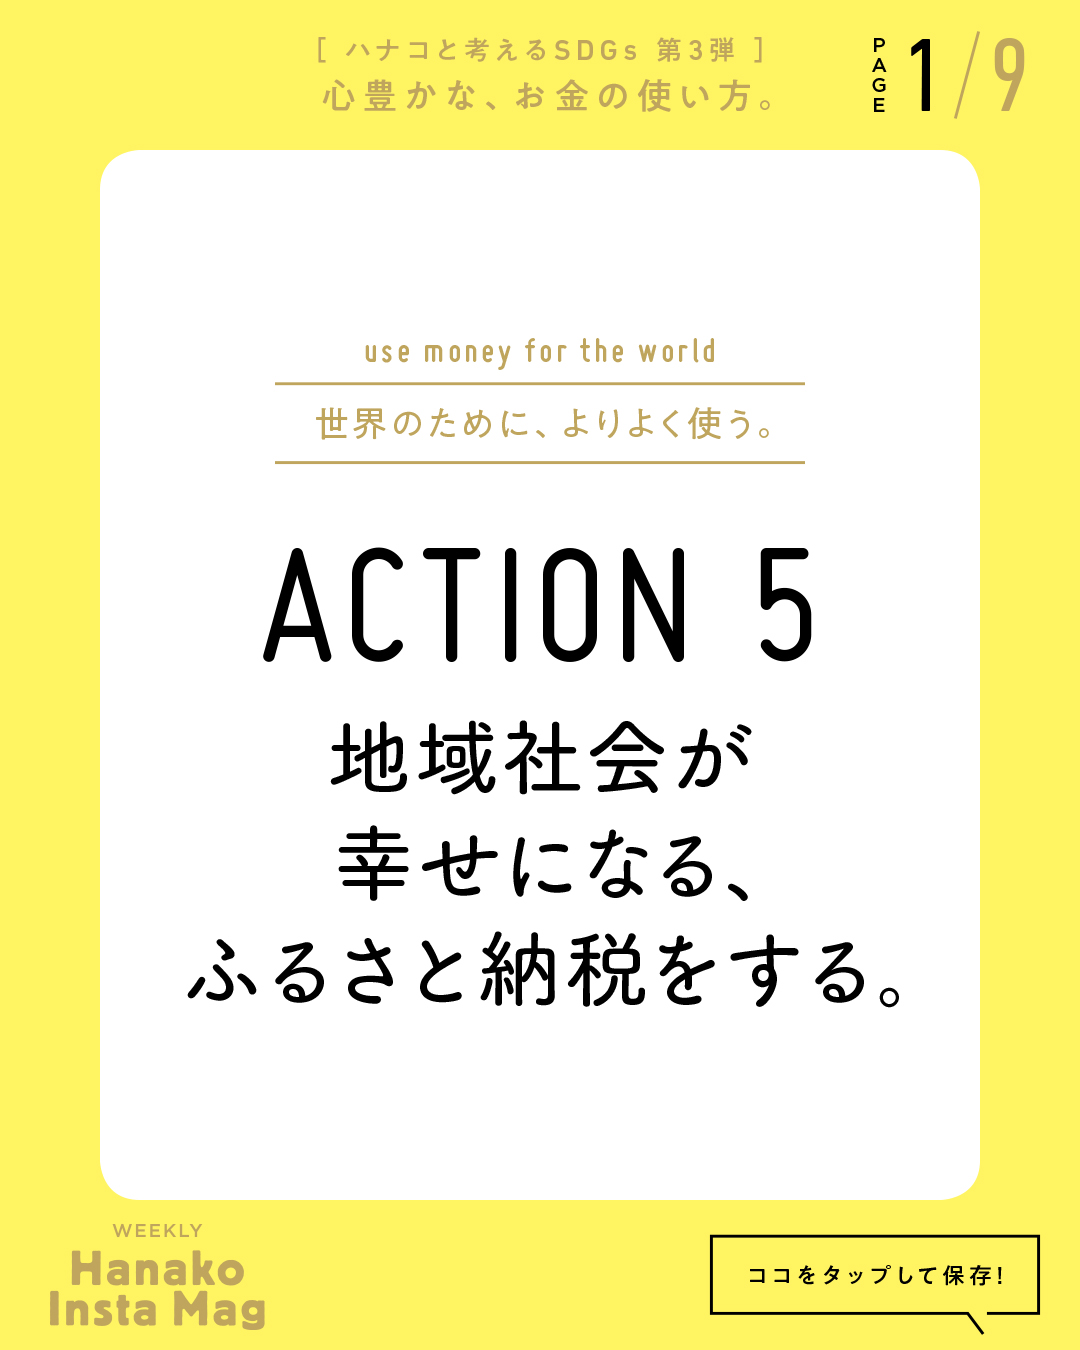 SDGs#3_sekai_action#5-1